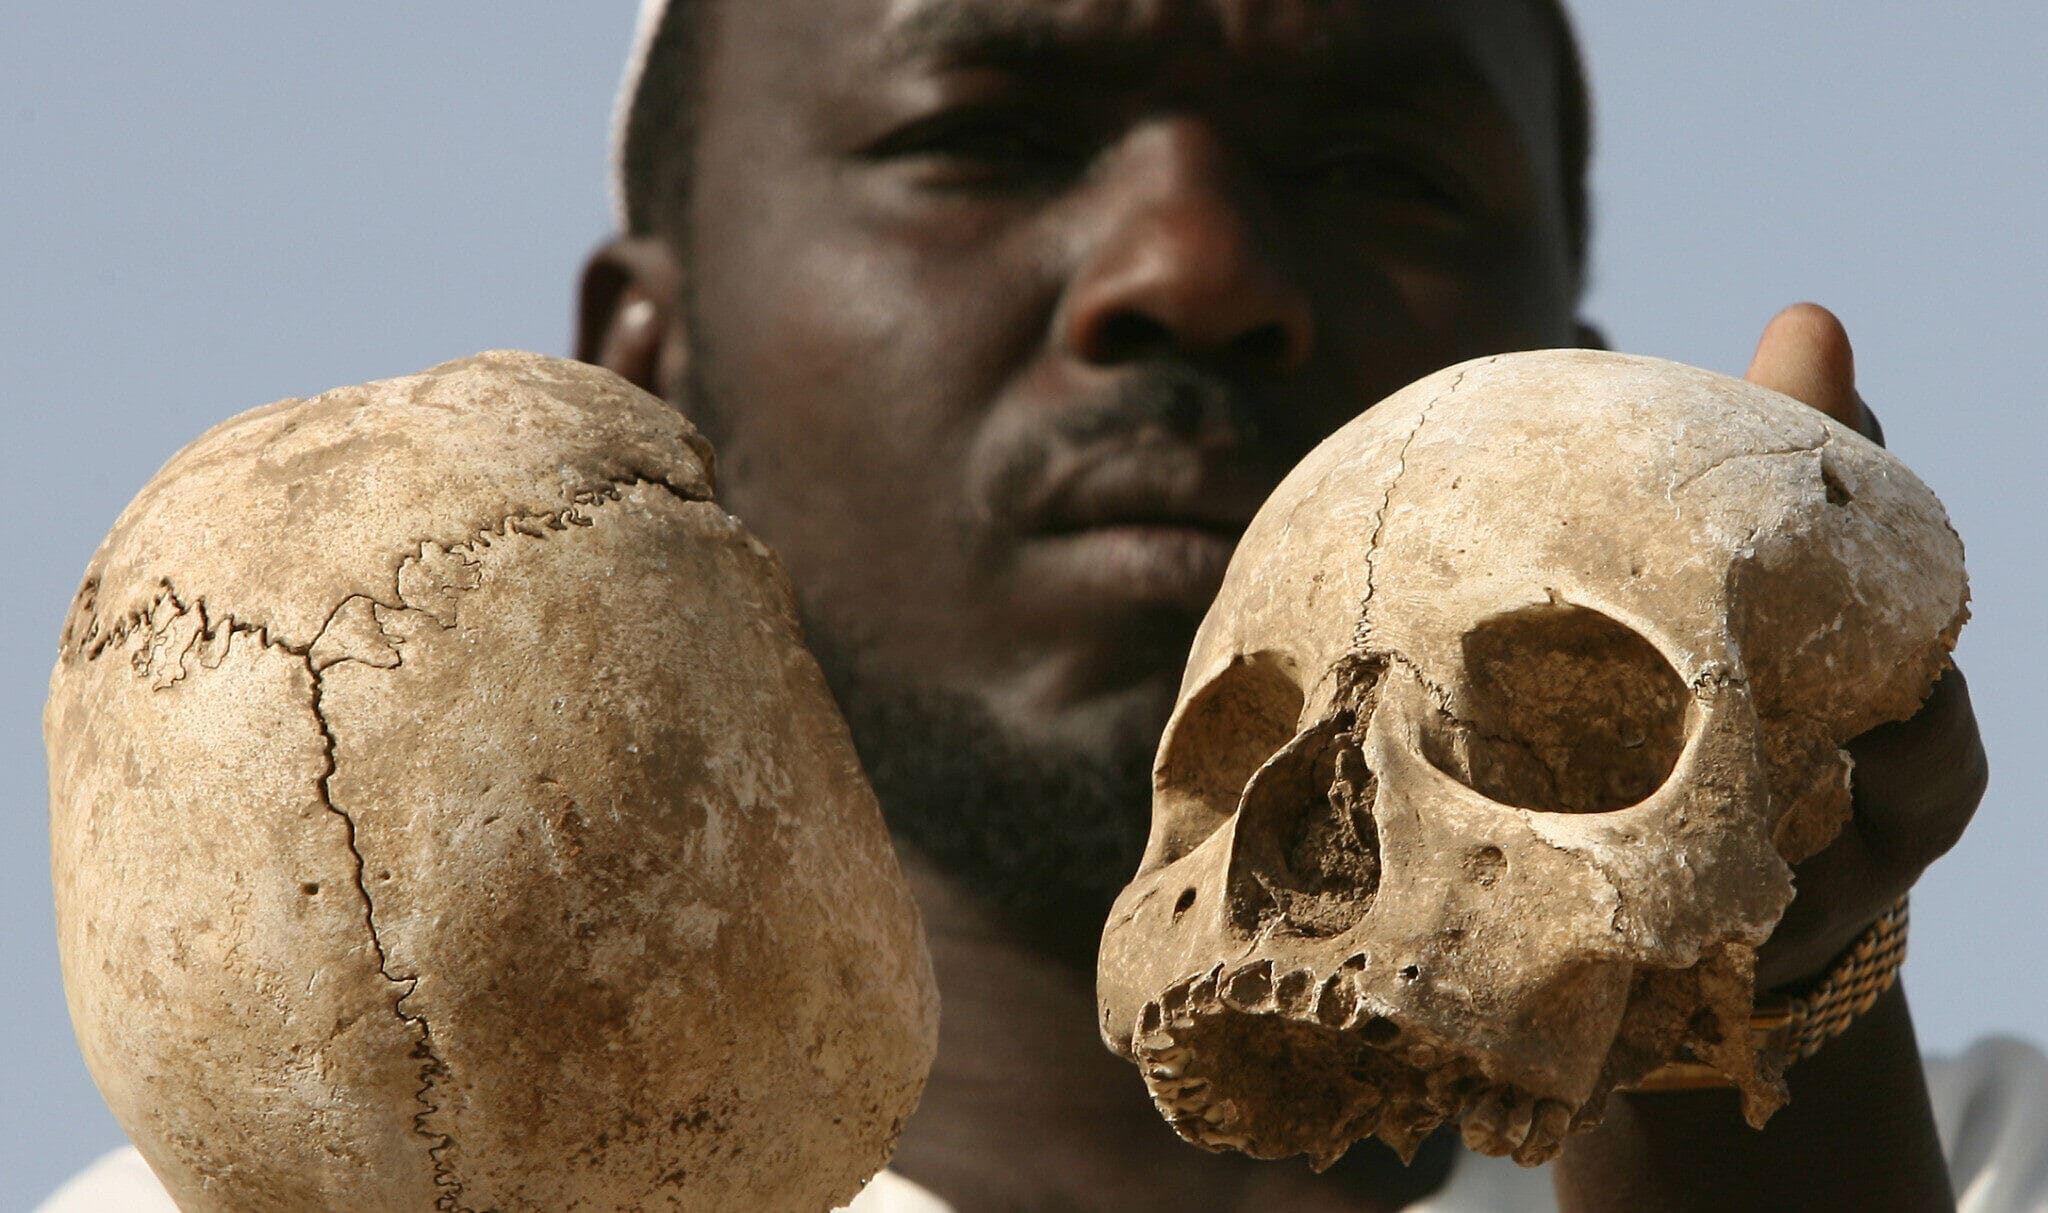 ניצול סודאני מדארפור בשם אבראהים מחזיק גולגולות אדם ליד קבר המוני שבו לדבריו נמצאים שרידיהם של 25 מחבריו ובני הכפר שלו, בפאתי העיר מוקג&#039;ר במערב דארפור, סודאן, 23 באפריל 2007 (צילום: AP/Nasser Nasser)